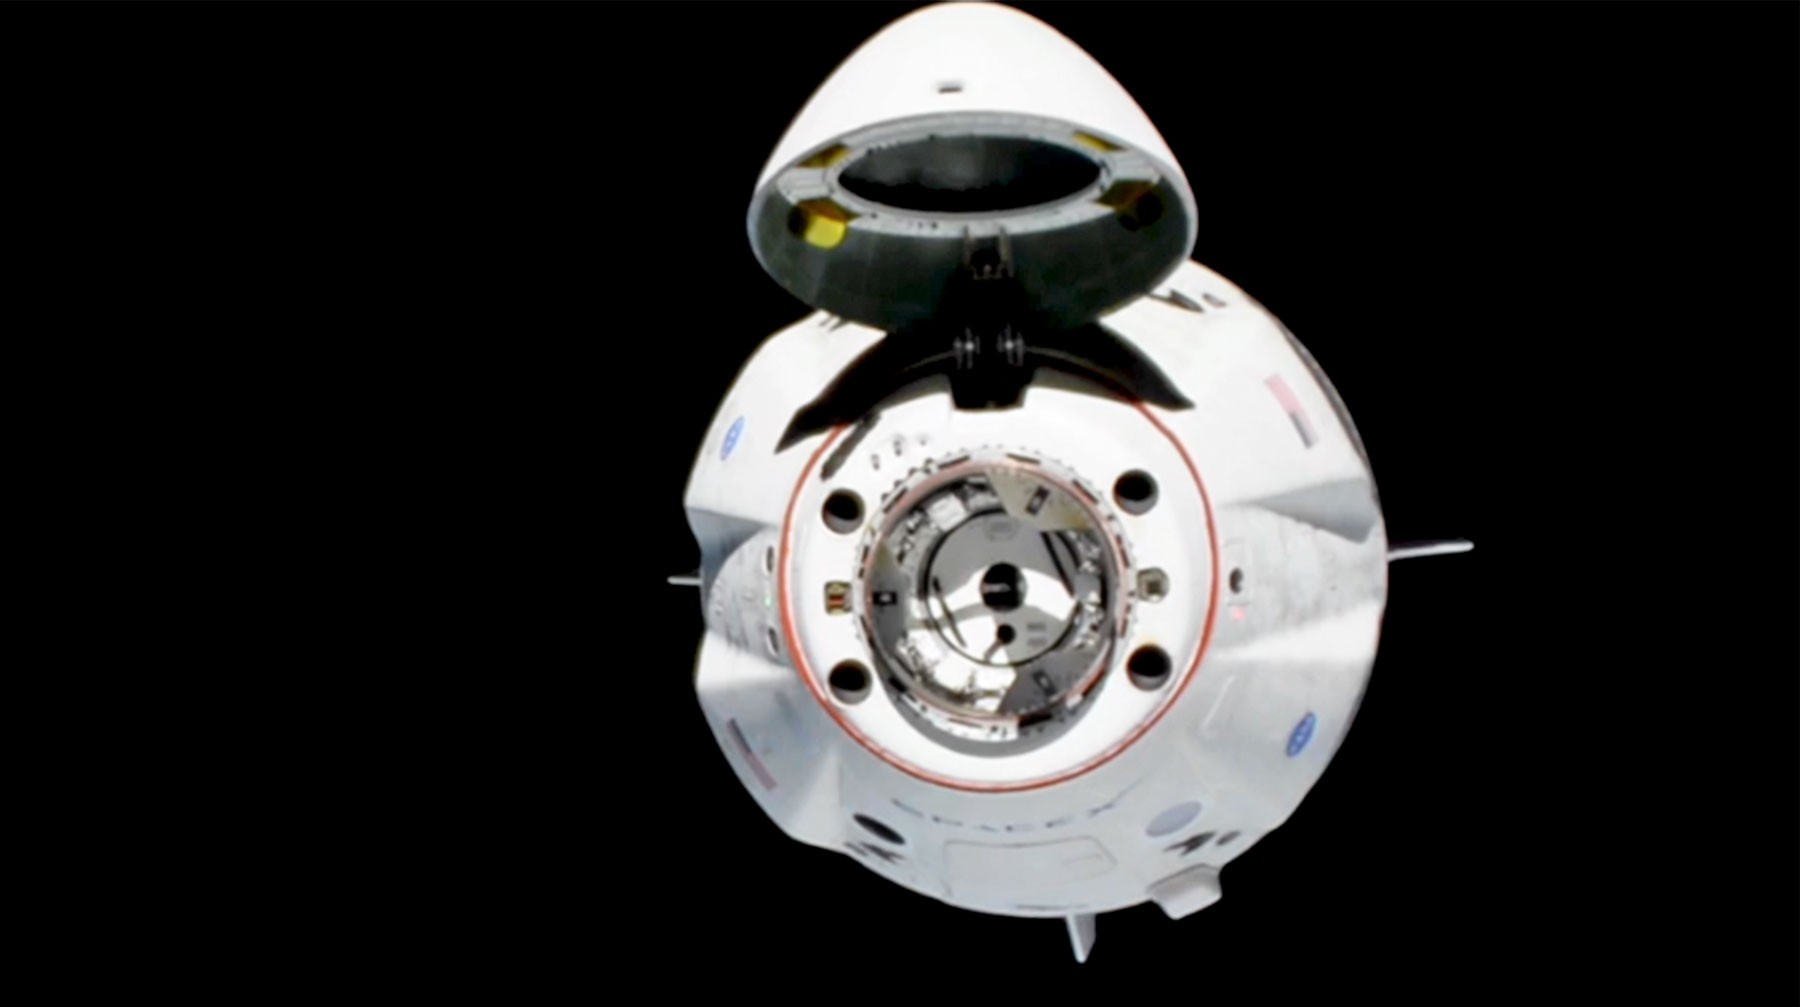 Dailystorm - Космический корабль Dragon-2 пристыковался к МКС